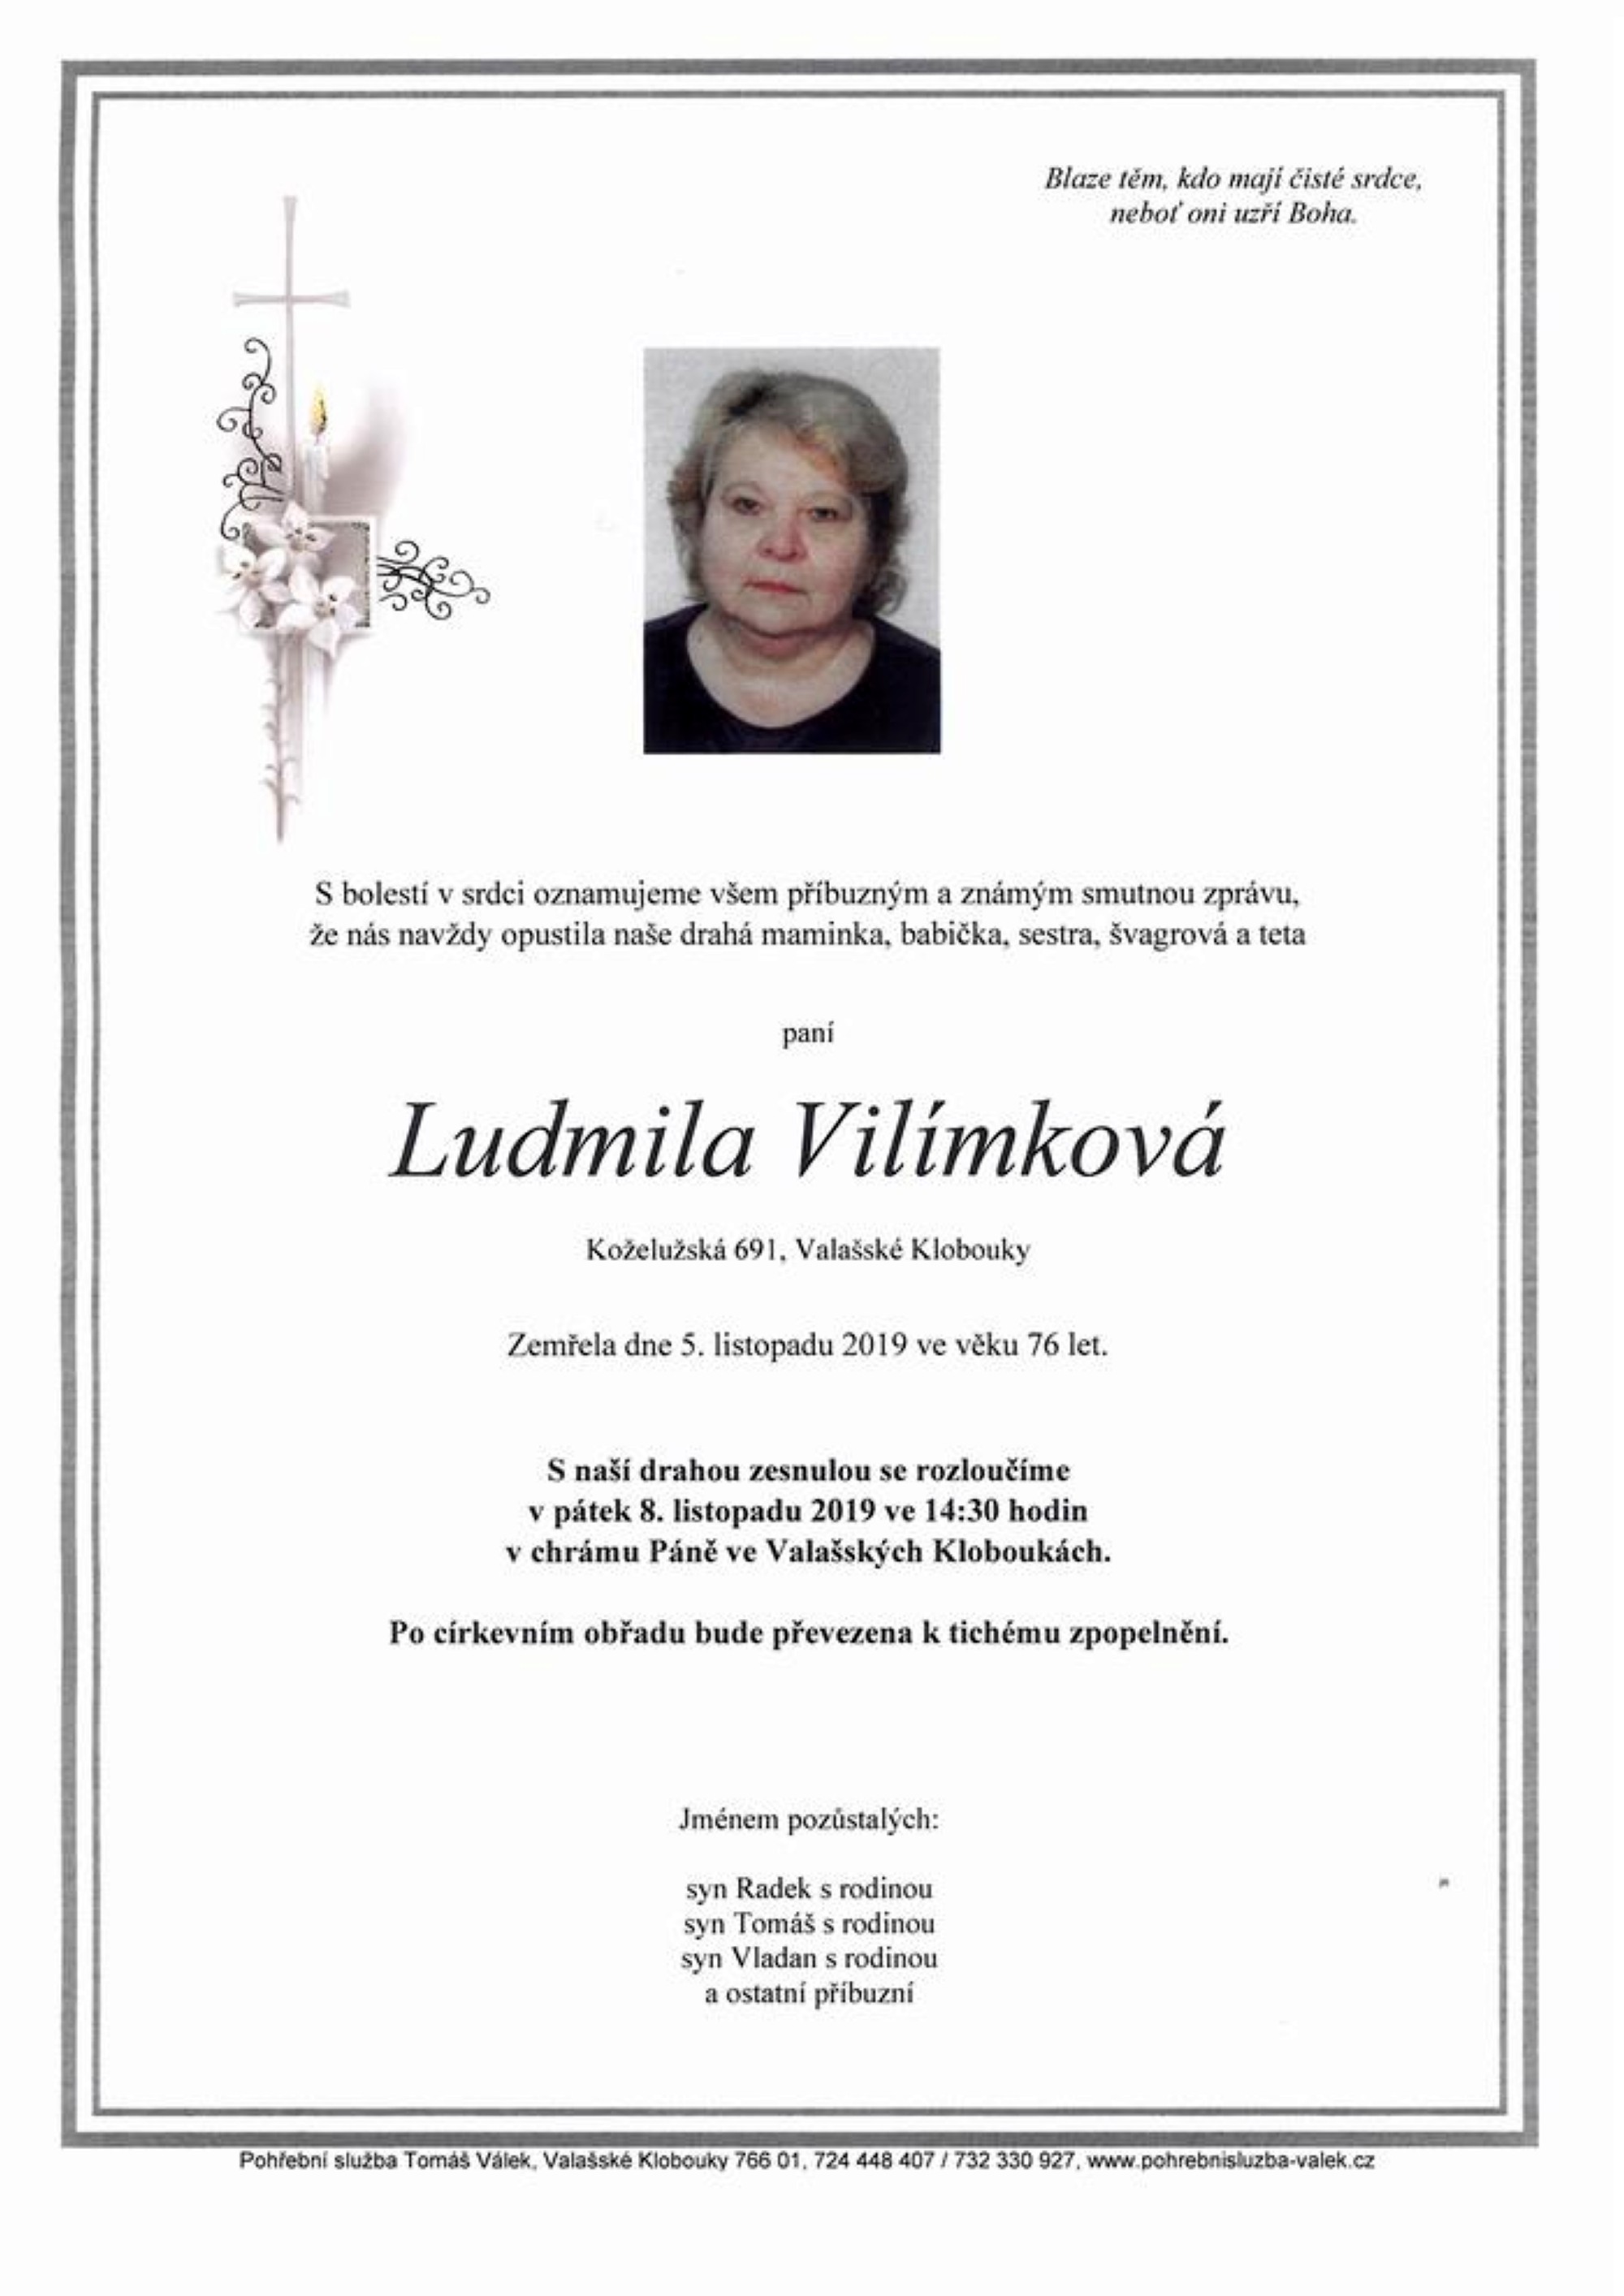 Ludmila Vilímková